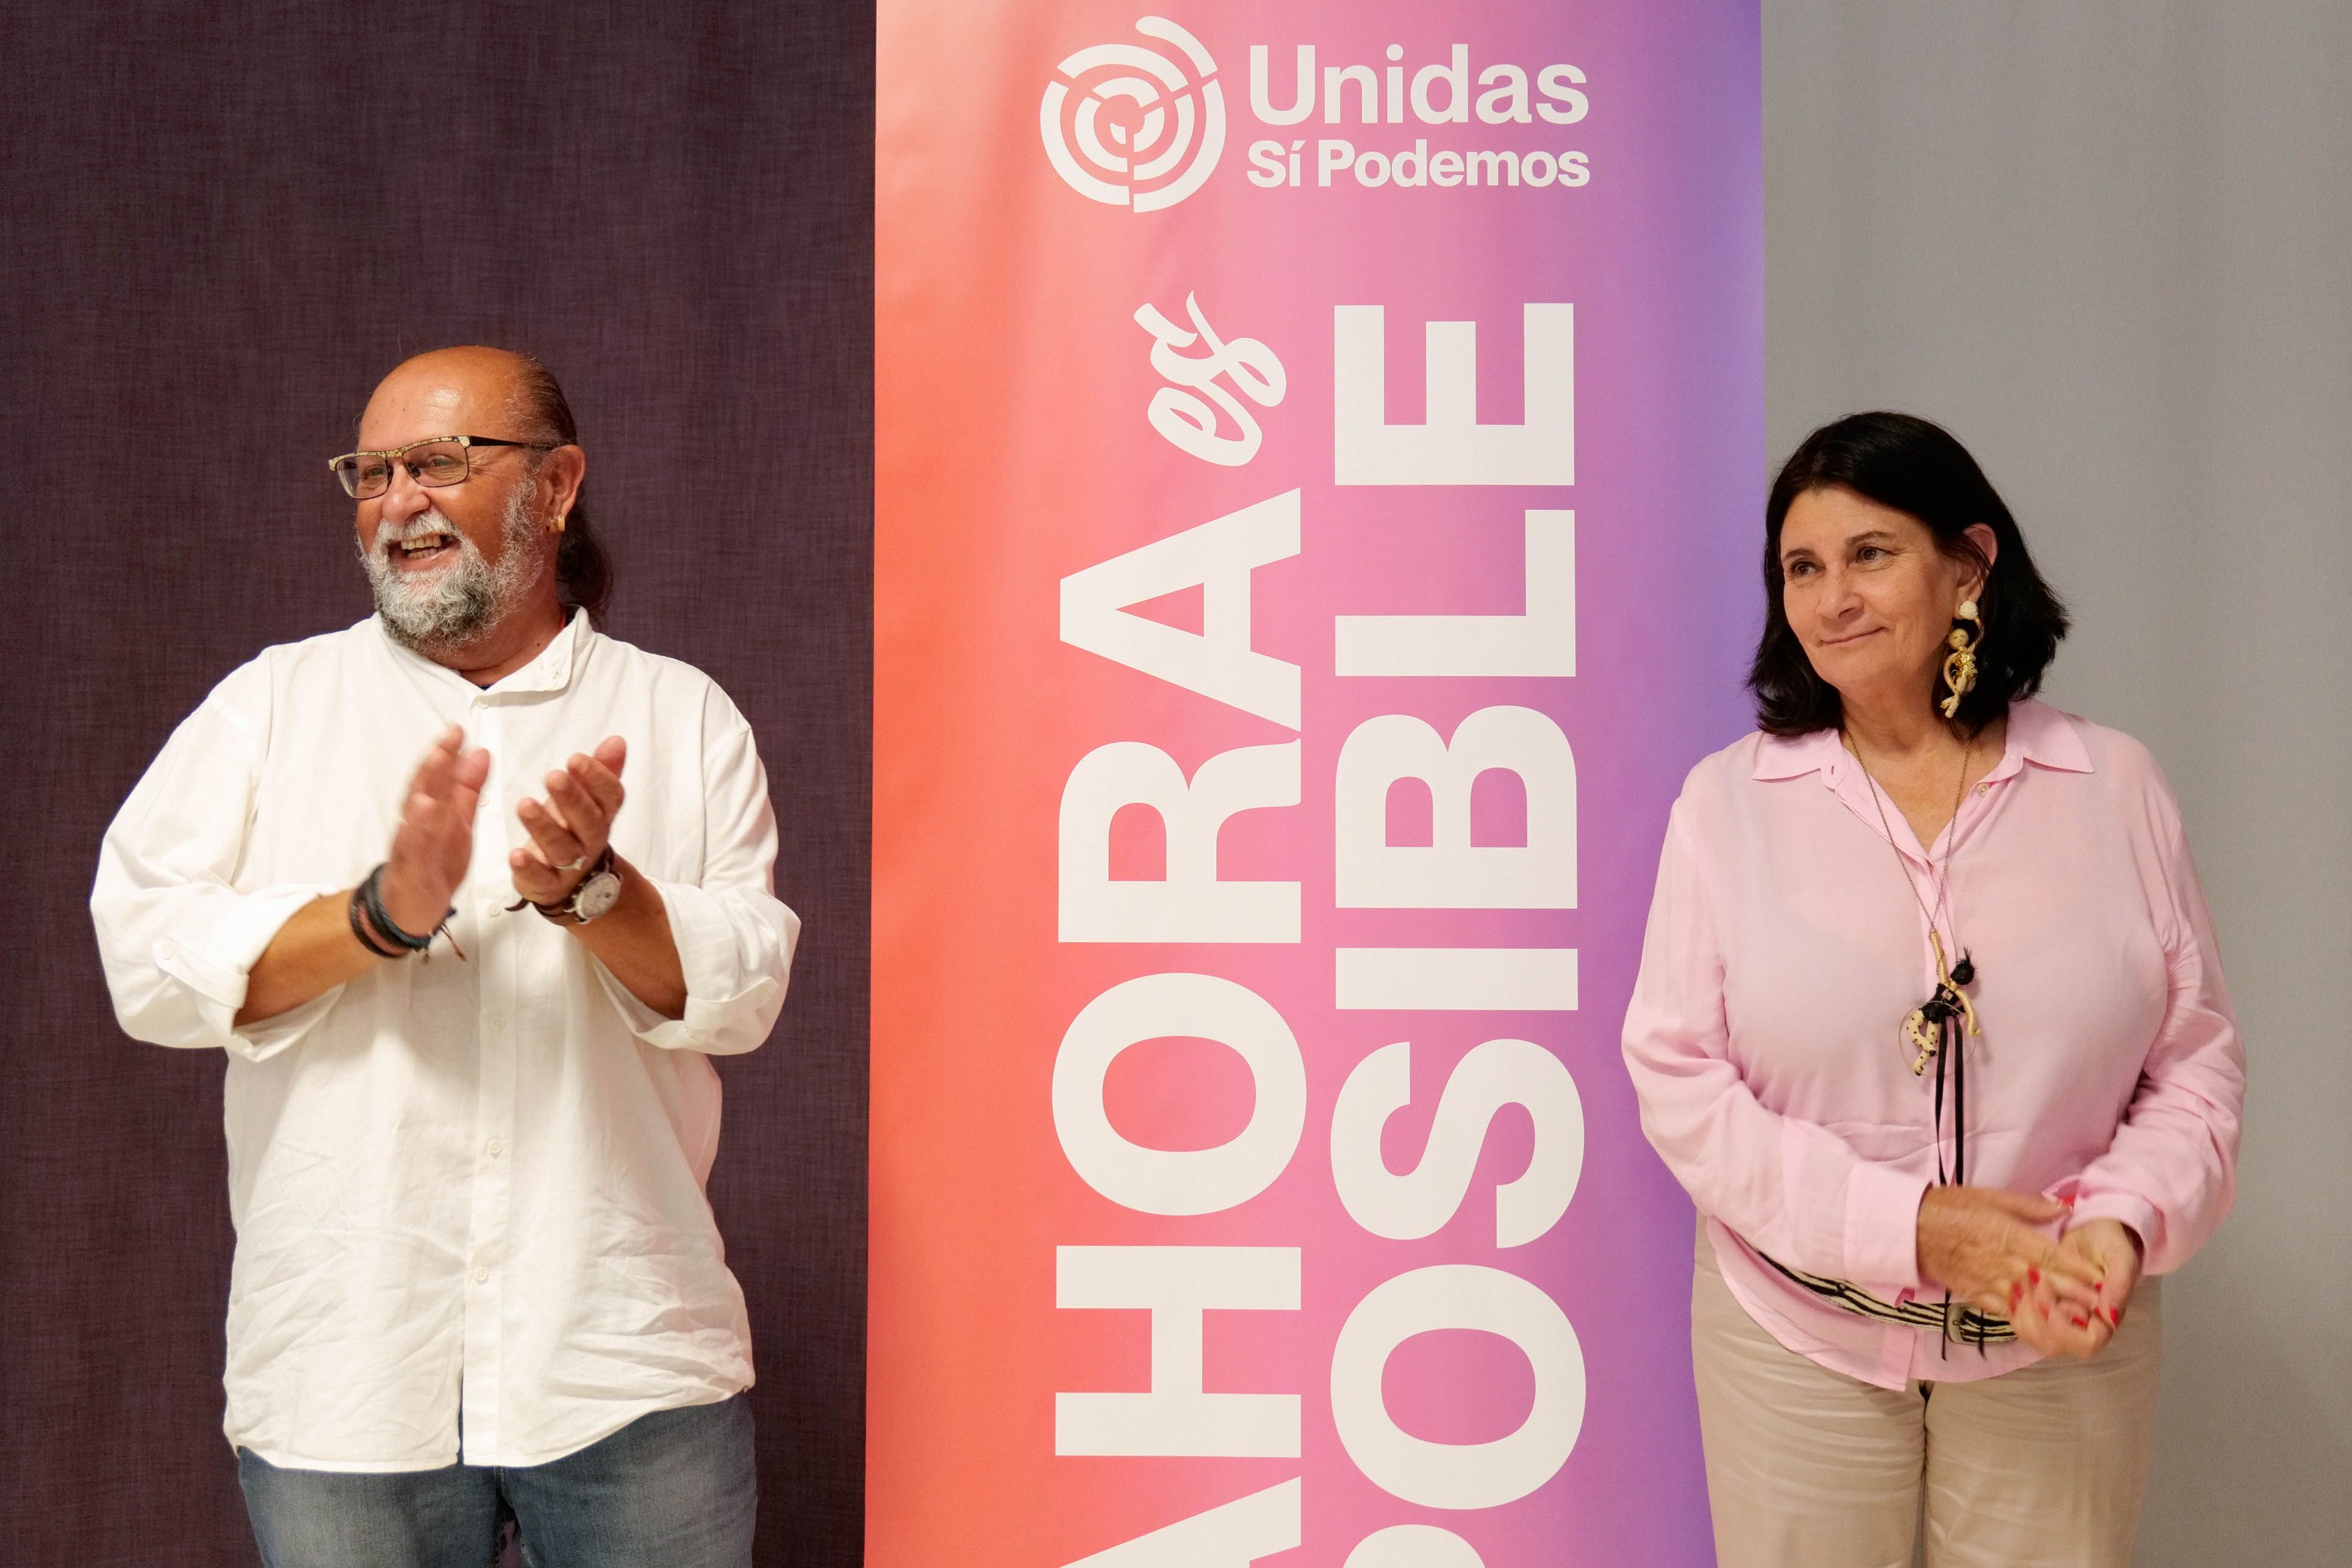 El candidato de Unidas Sí Podemos a presidir el Cabildo de Lanzarote, Nicolás Saavedra, y la candidata a la alcaldía de Arrecife, Nona Perera